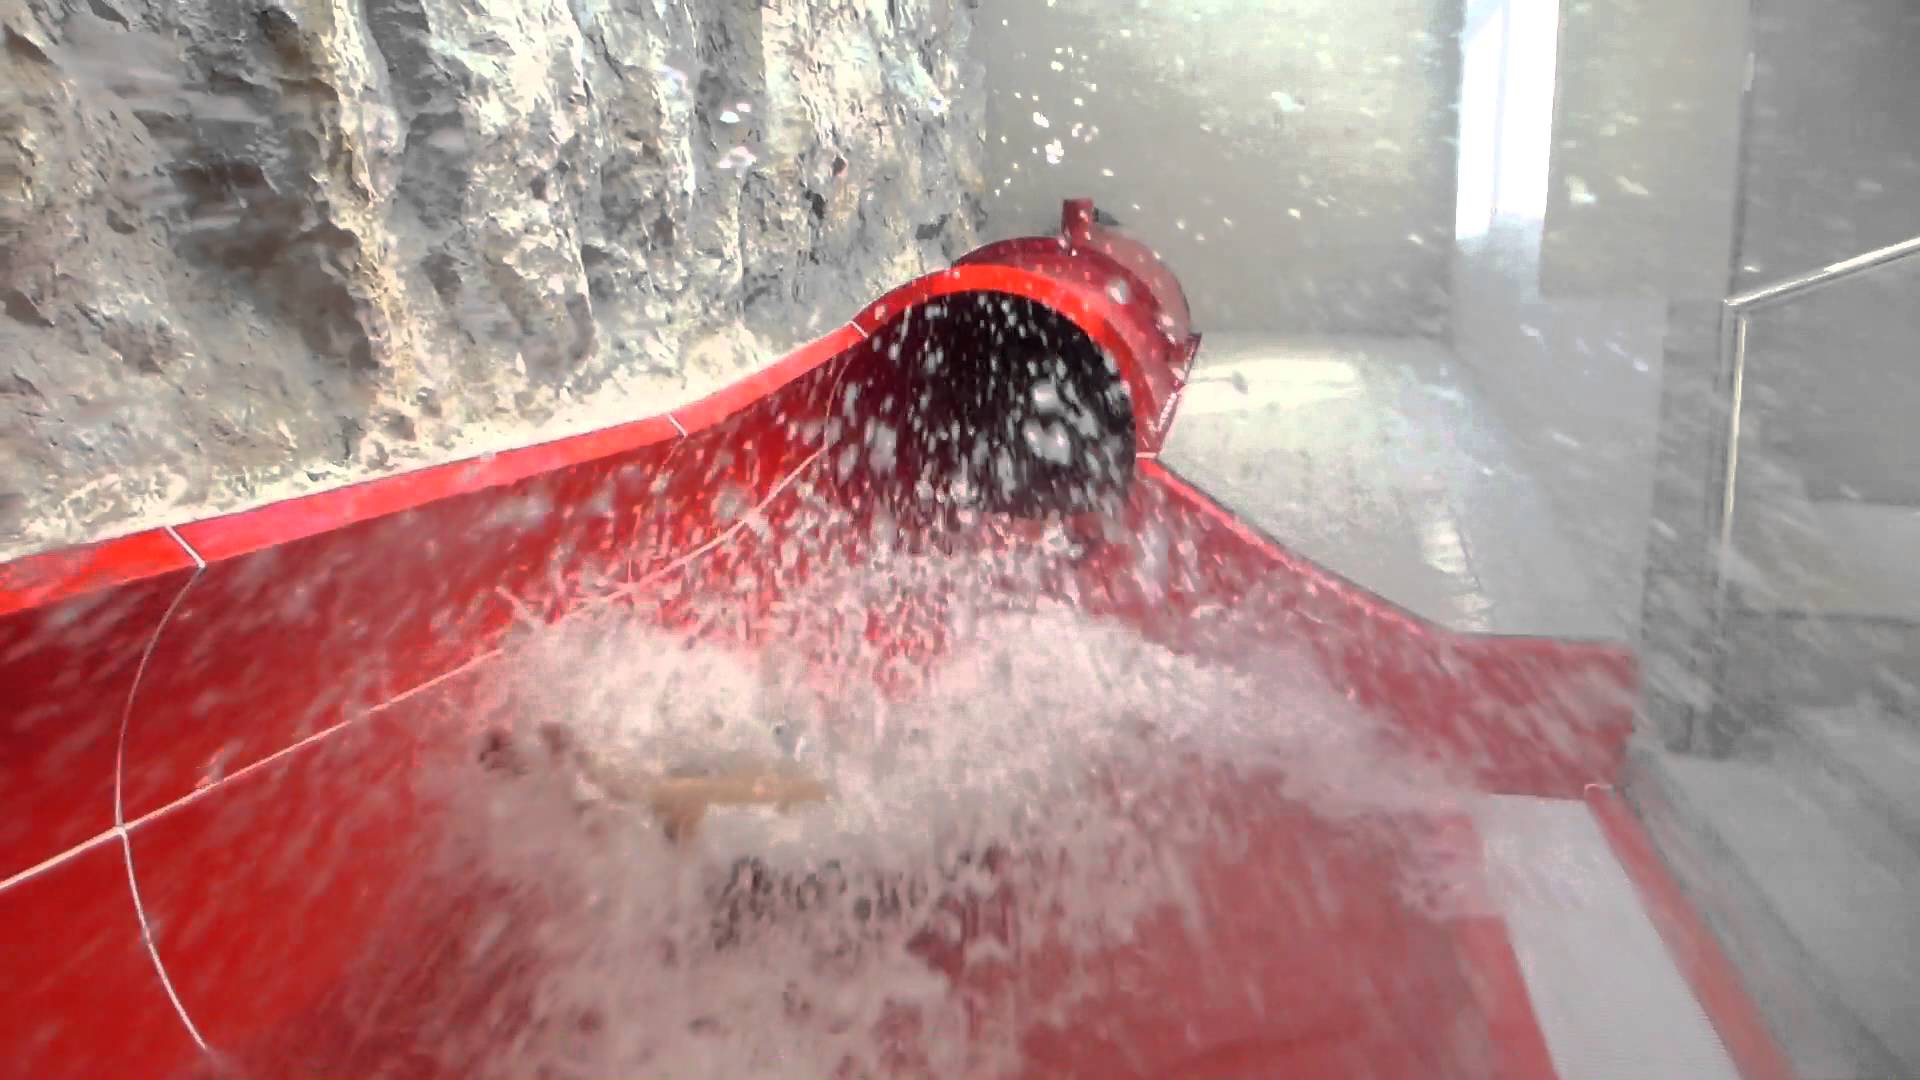 Speed-Röhrenrutsche (Turbo!) | AquaCity St. Pölten